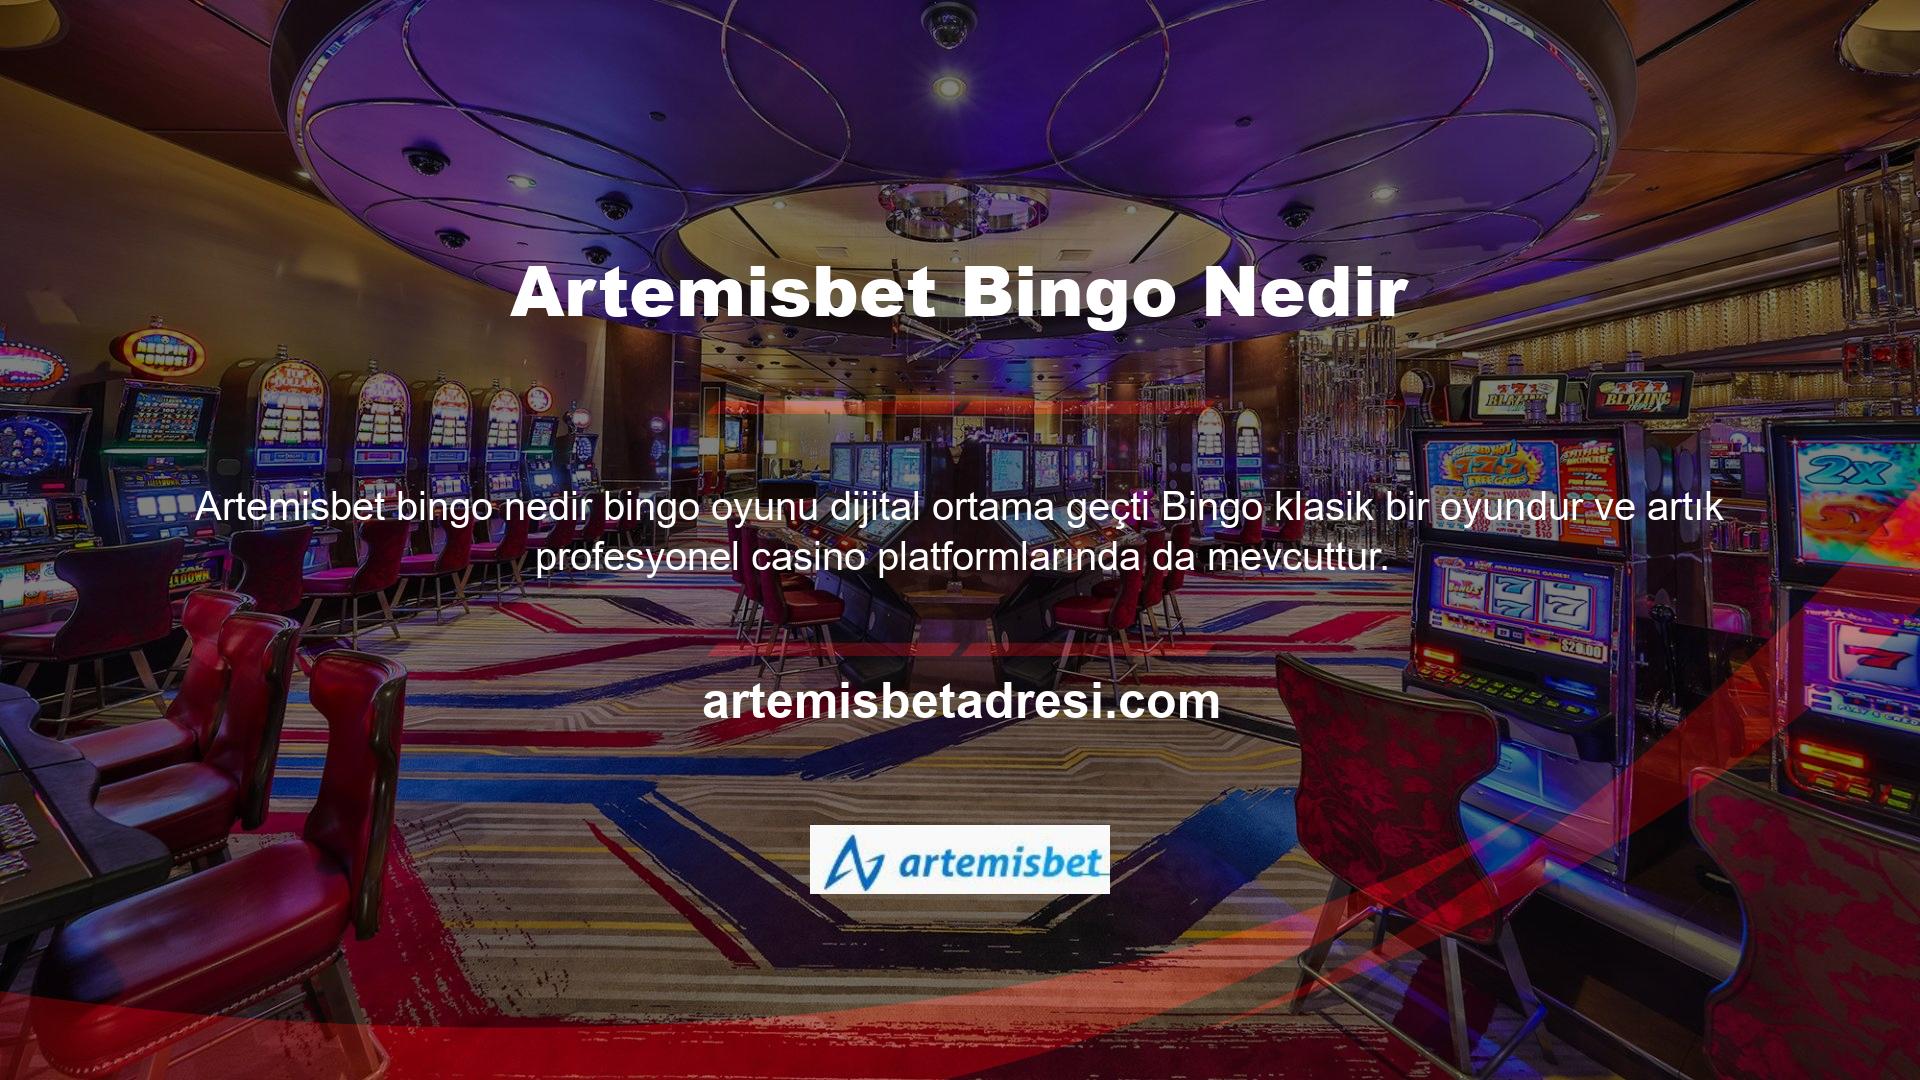 Artemisbet Bingo, size gerçek bir casino hissi veren okulun yıldızlarından biridir